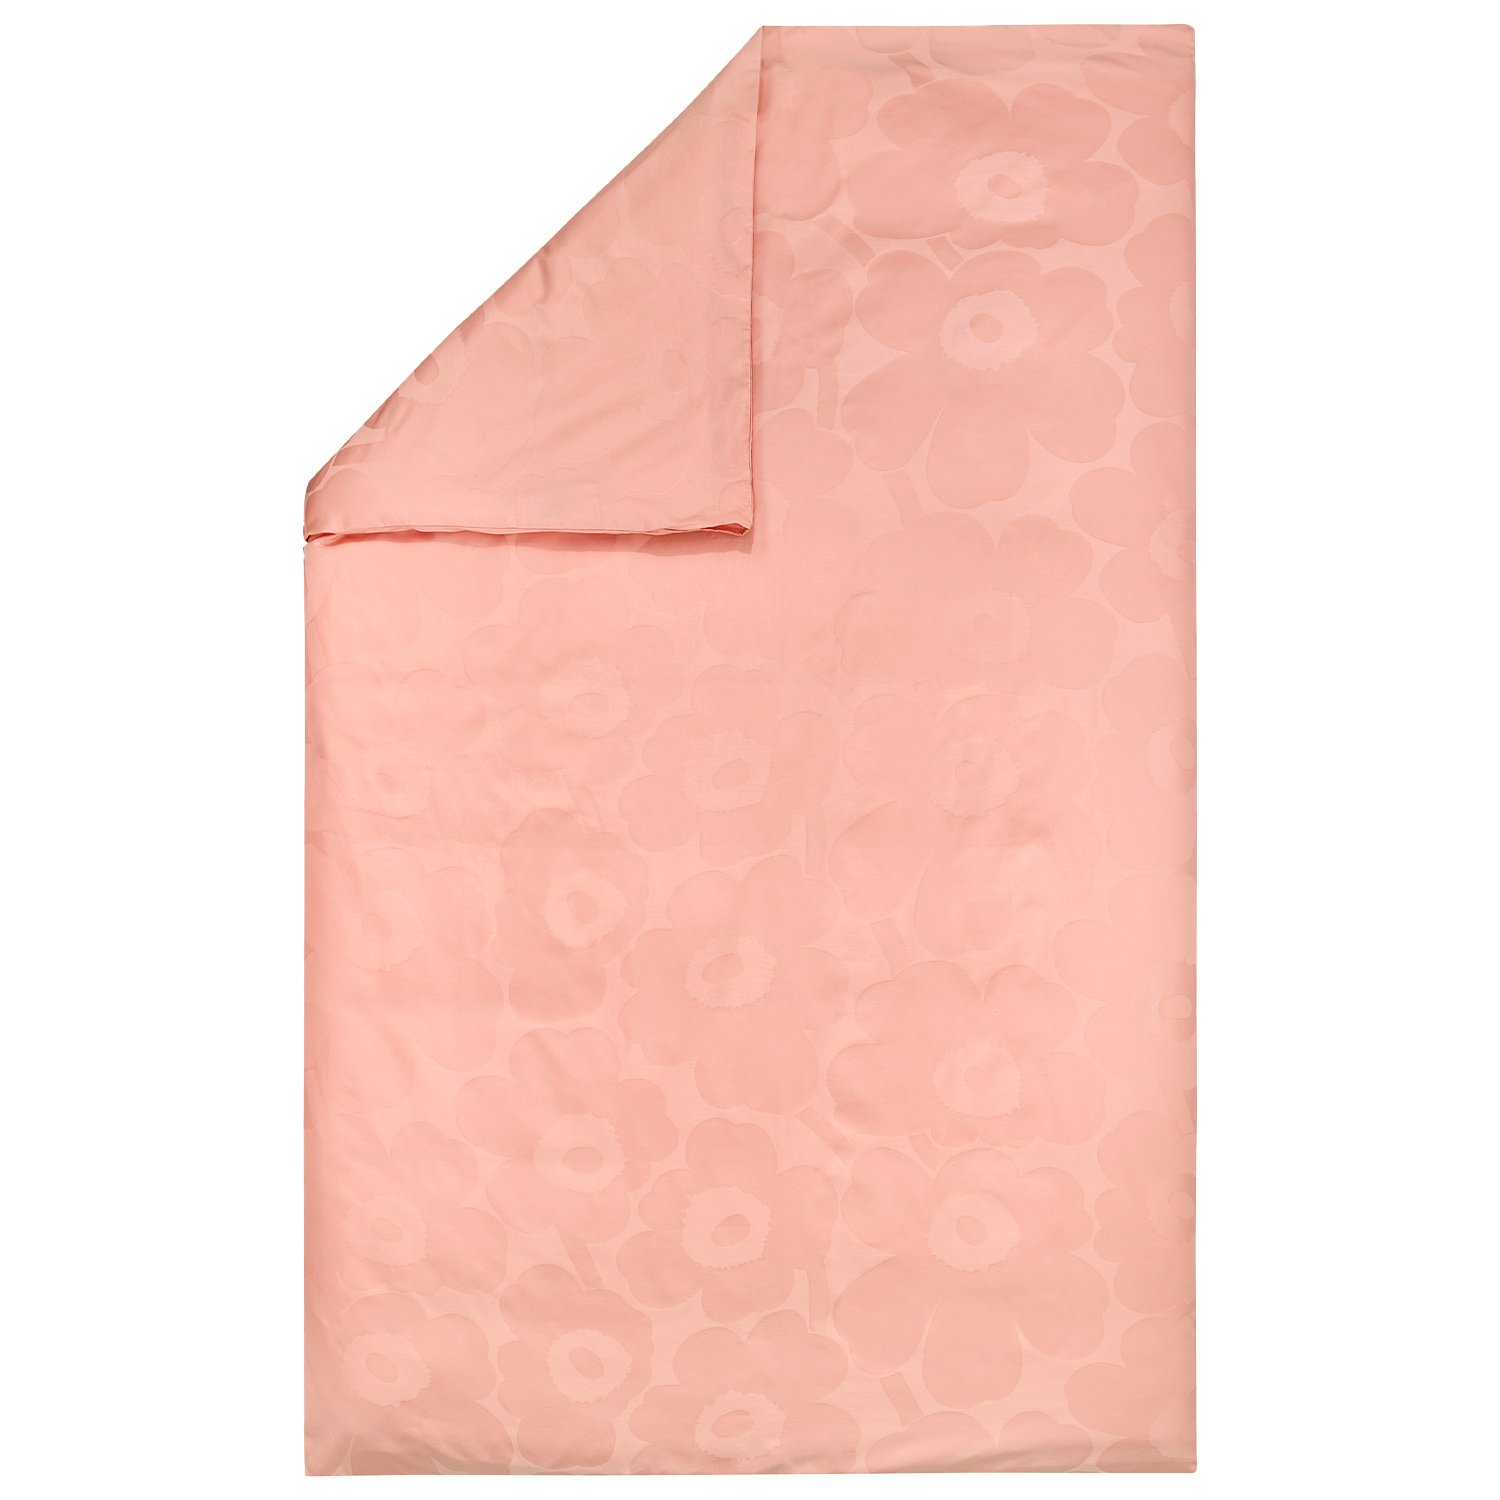 Marimekko Unikko pussilakana, 150 x 210 cm, puuteri - vaaleanpunainen